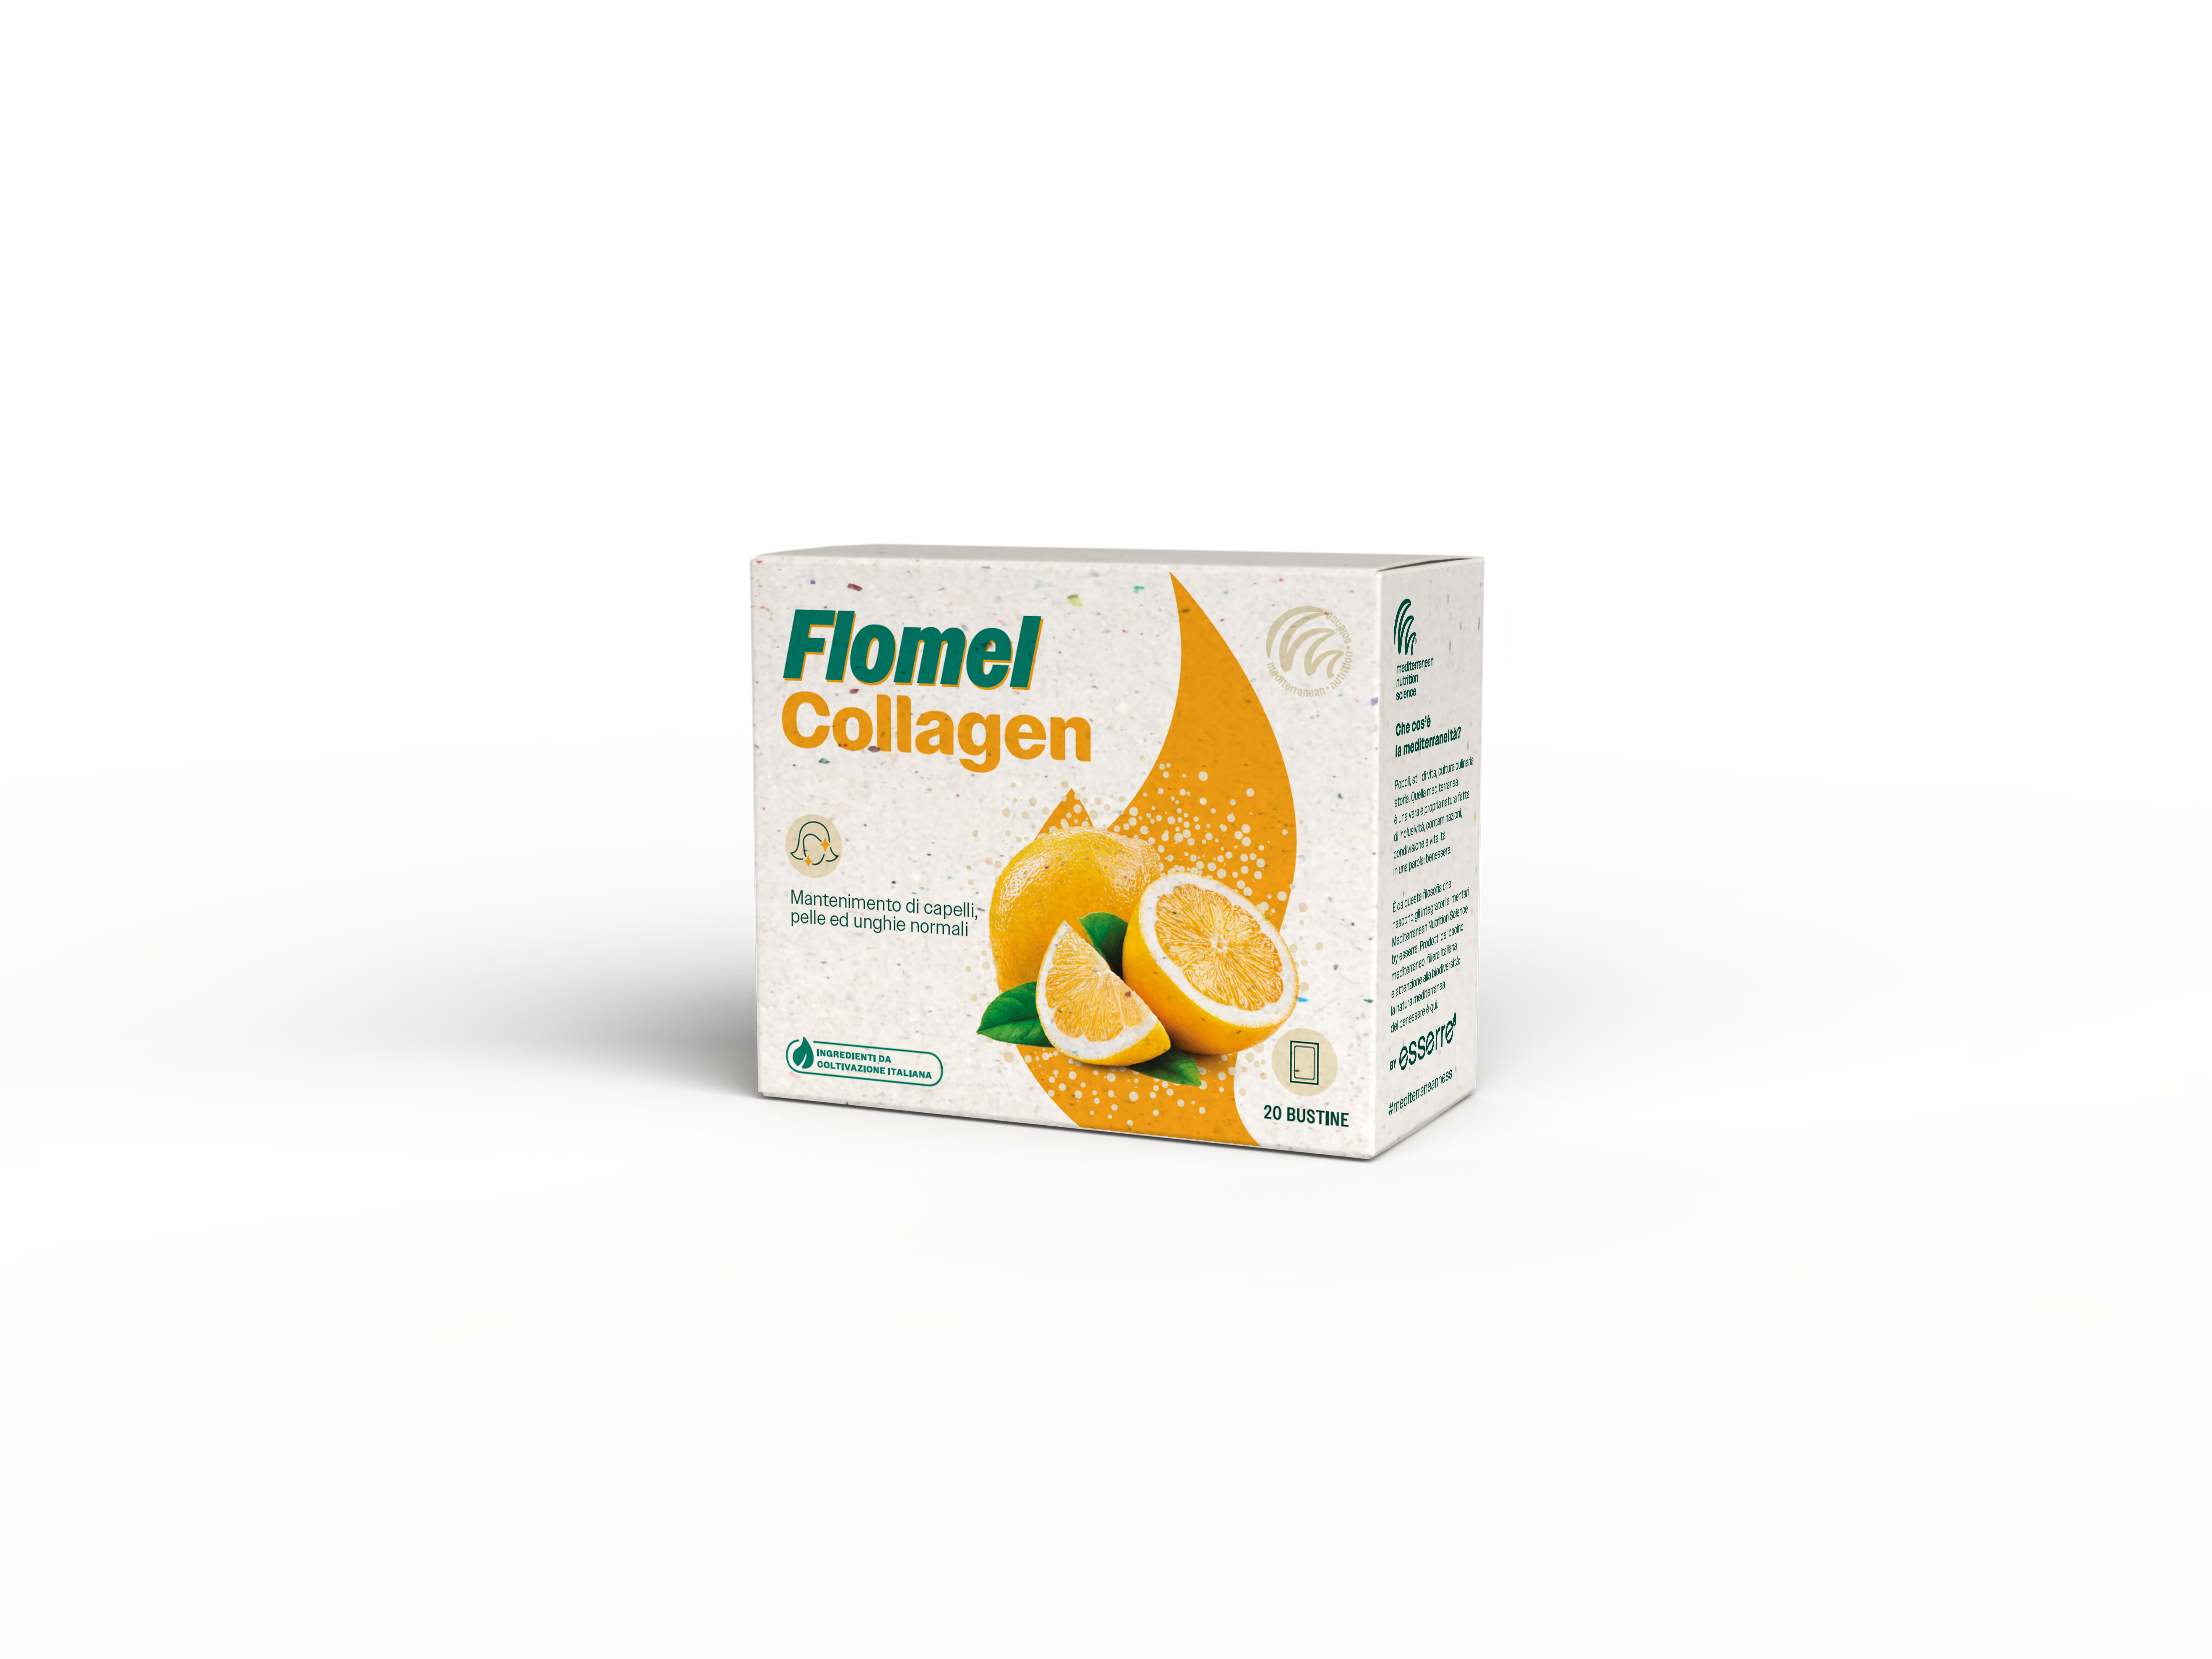 Flomel Collagen